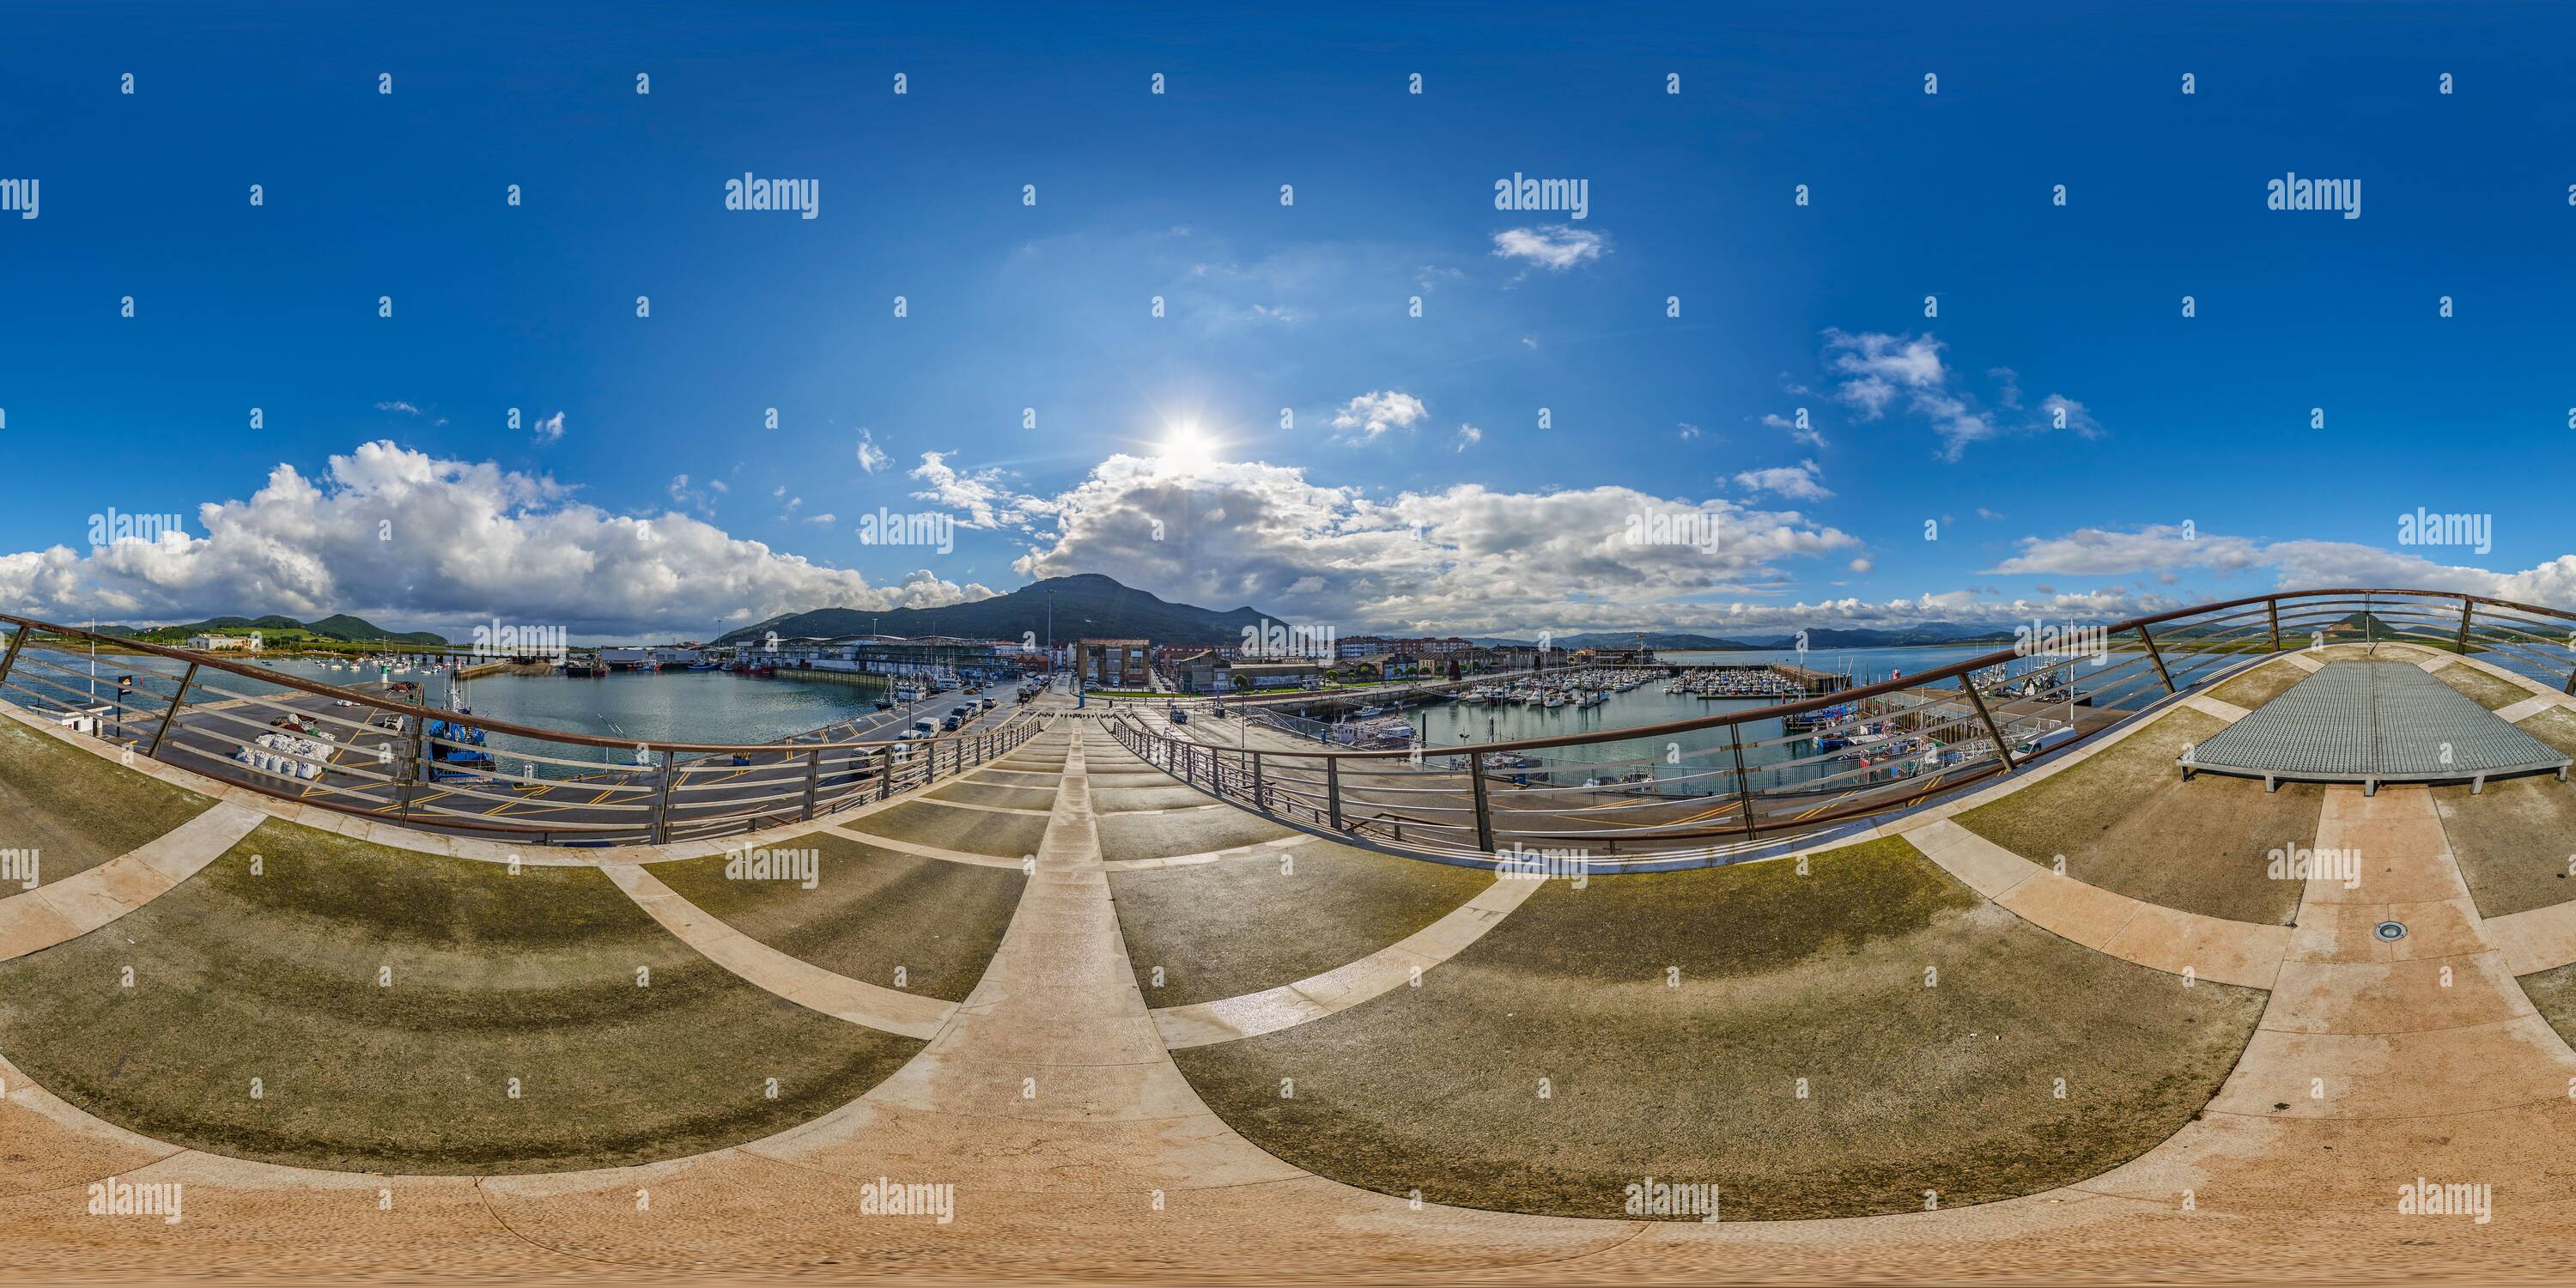 Vista panorámica en 360 grados de Panorámica de 360 grados: Centro de interpretación del Parque Natural de las Marismas de Santoña, Victoria y Joyel, Cantabria, España, Europa